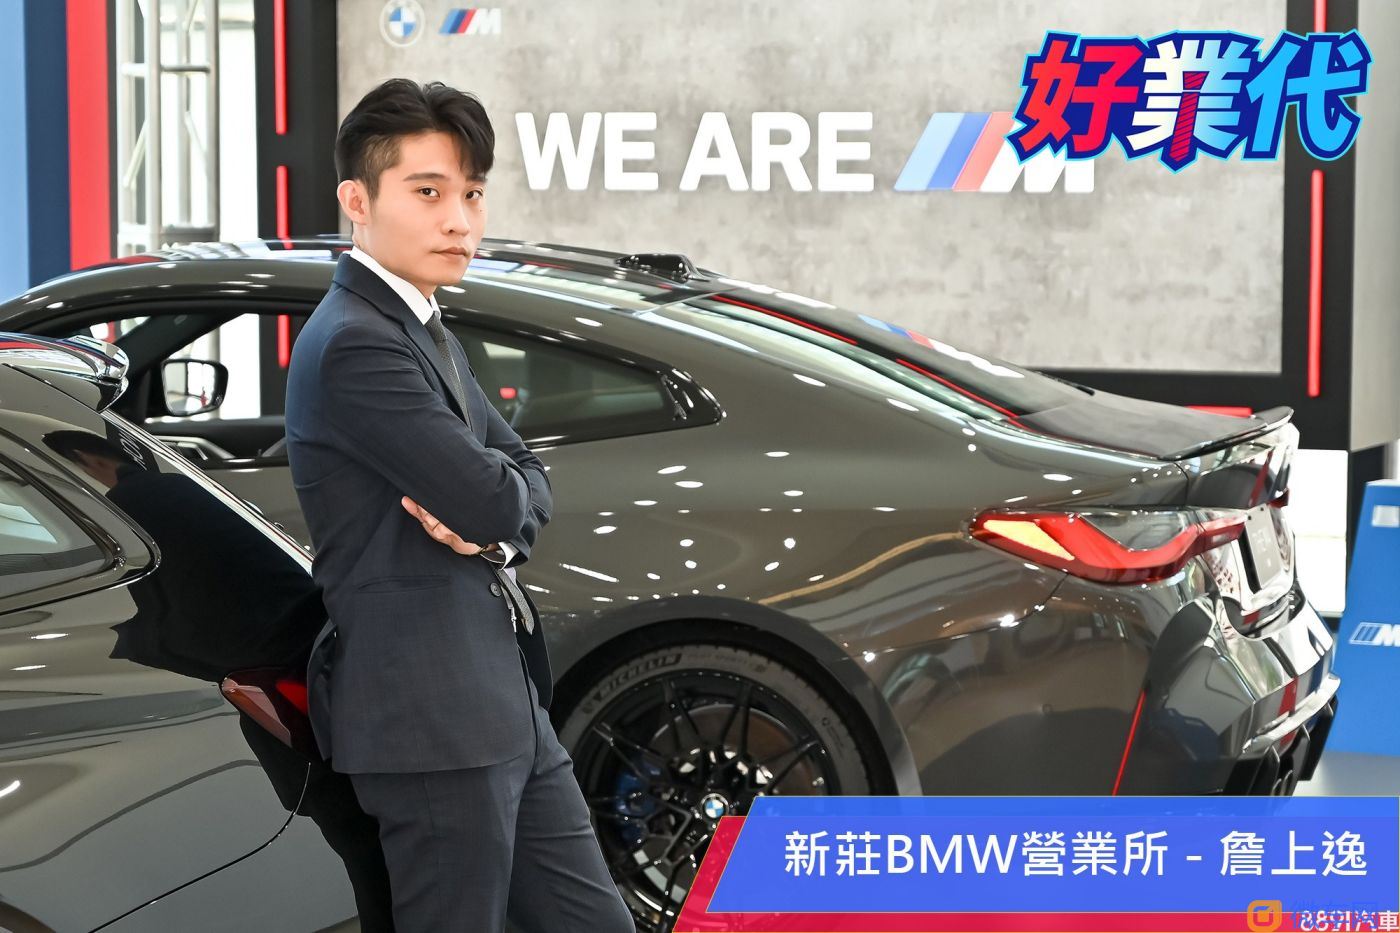 「从小就立志要当BMW销售业代的车主」 - 新庄B